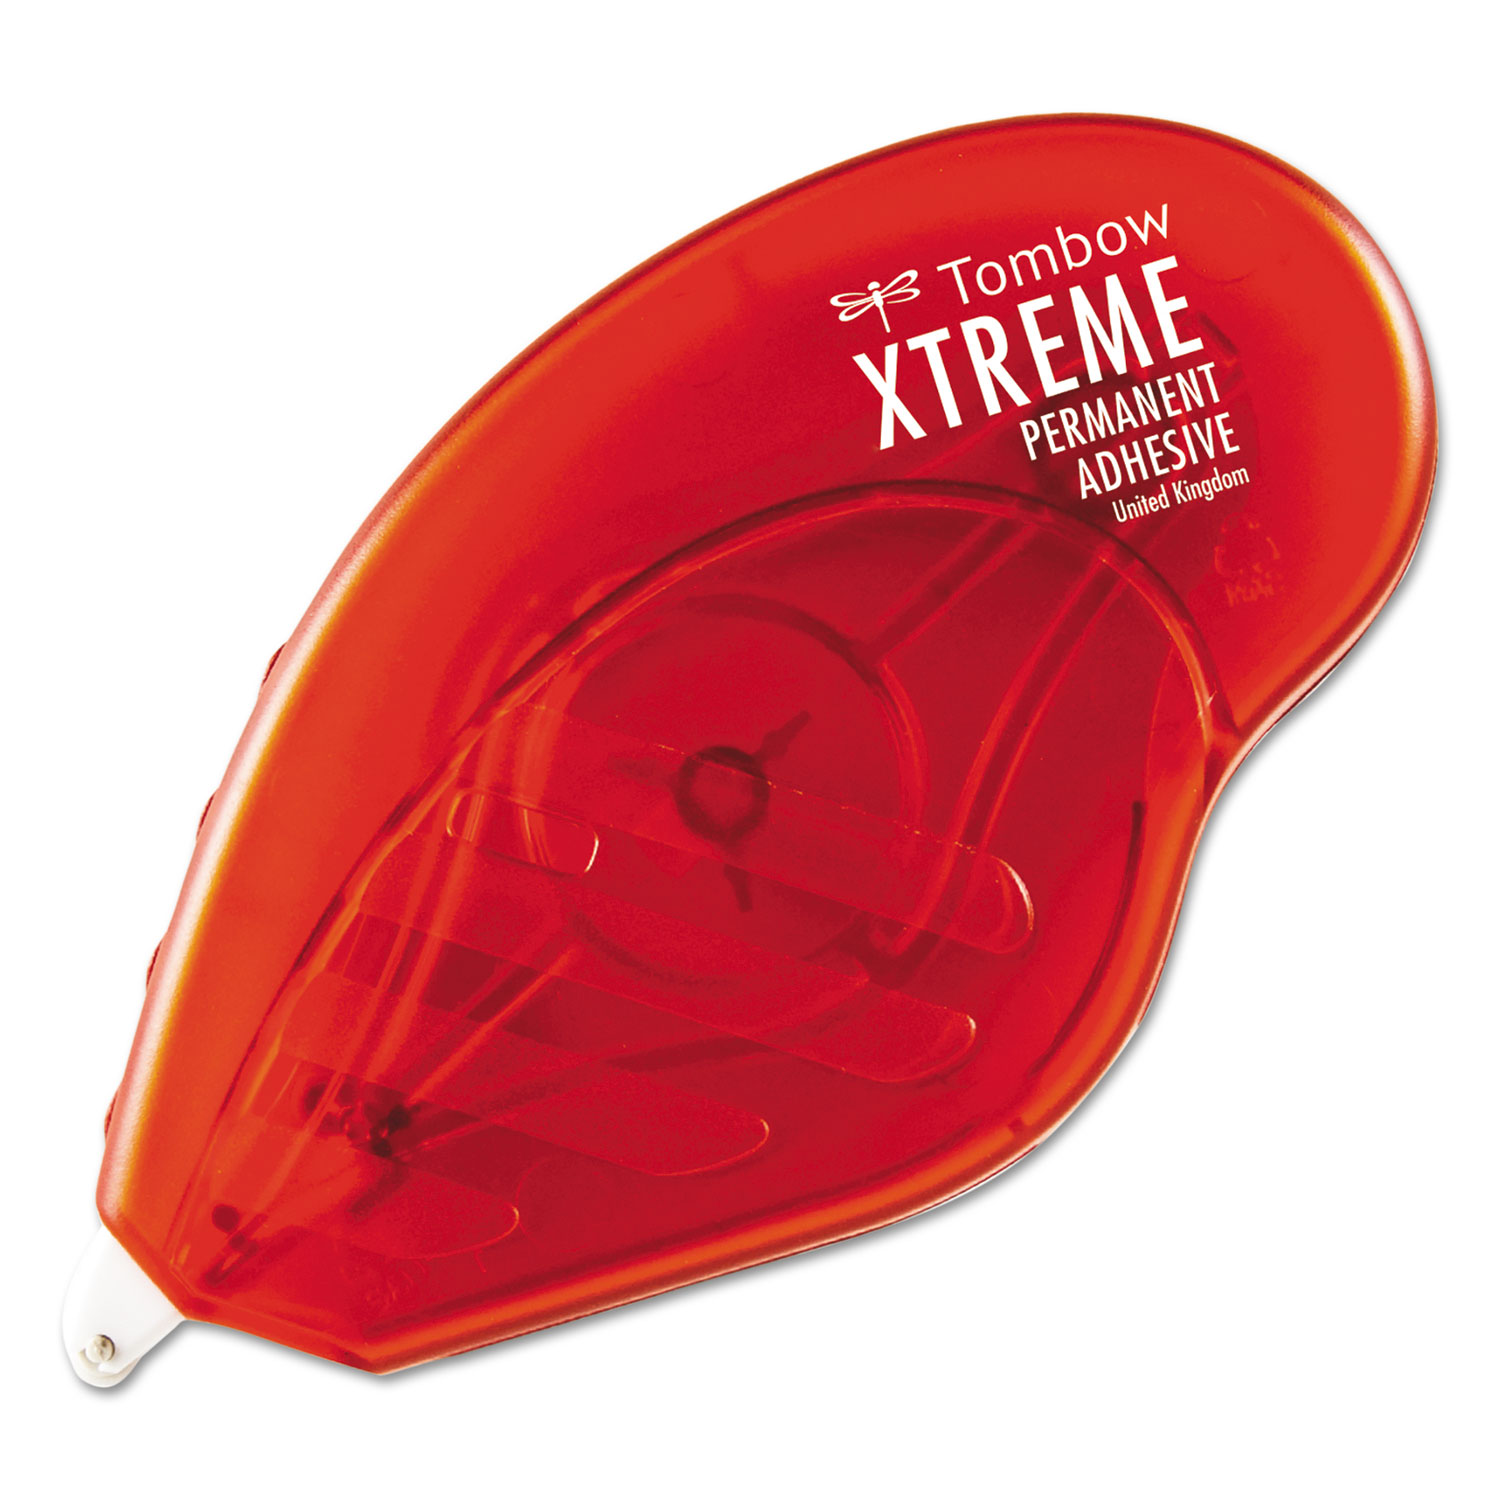 Tombow Xtreme Adhesive 